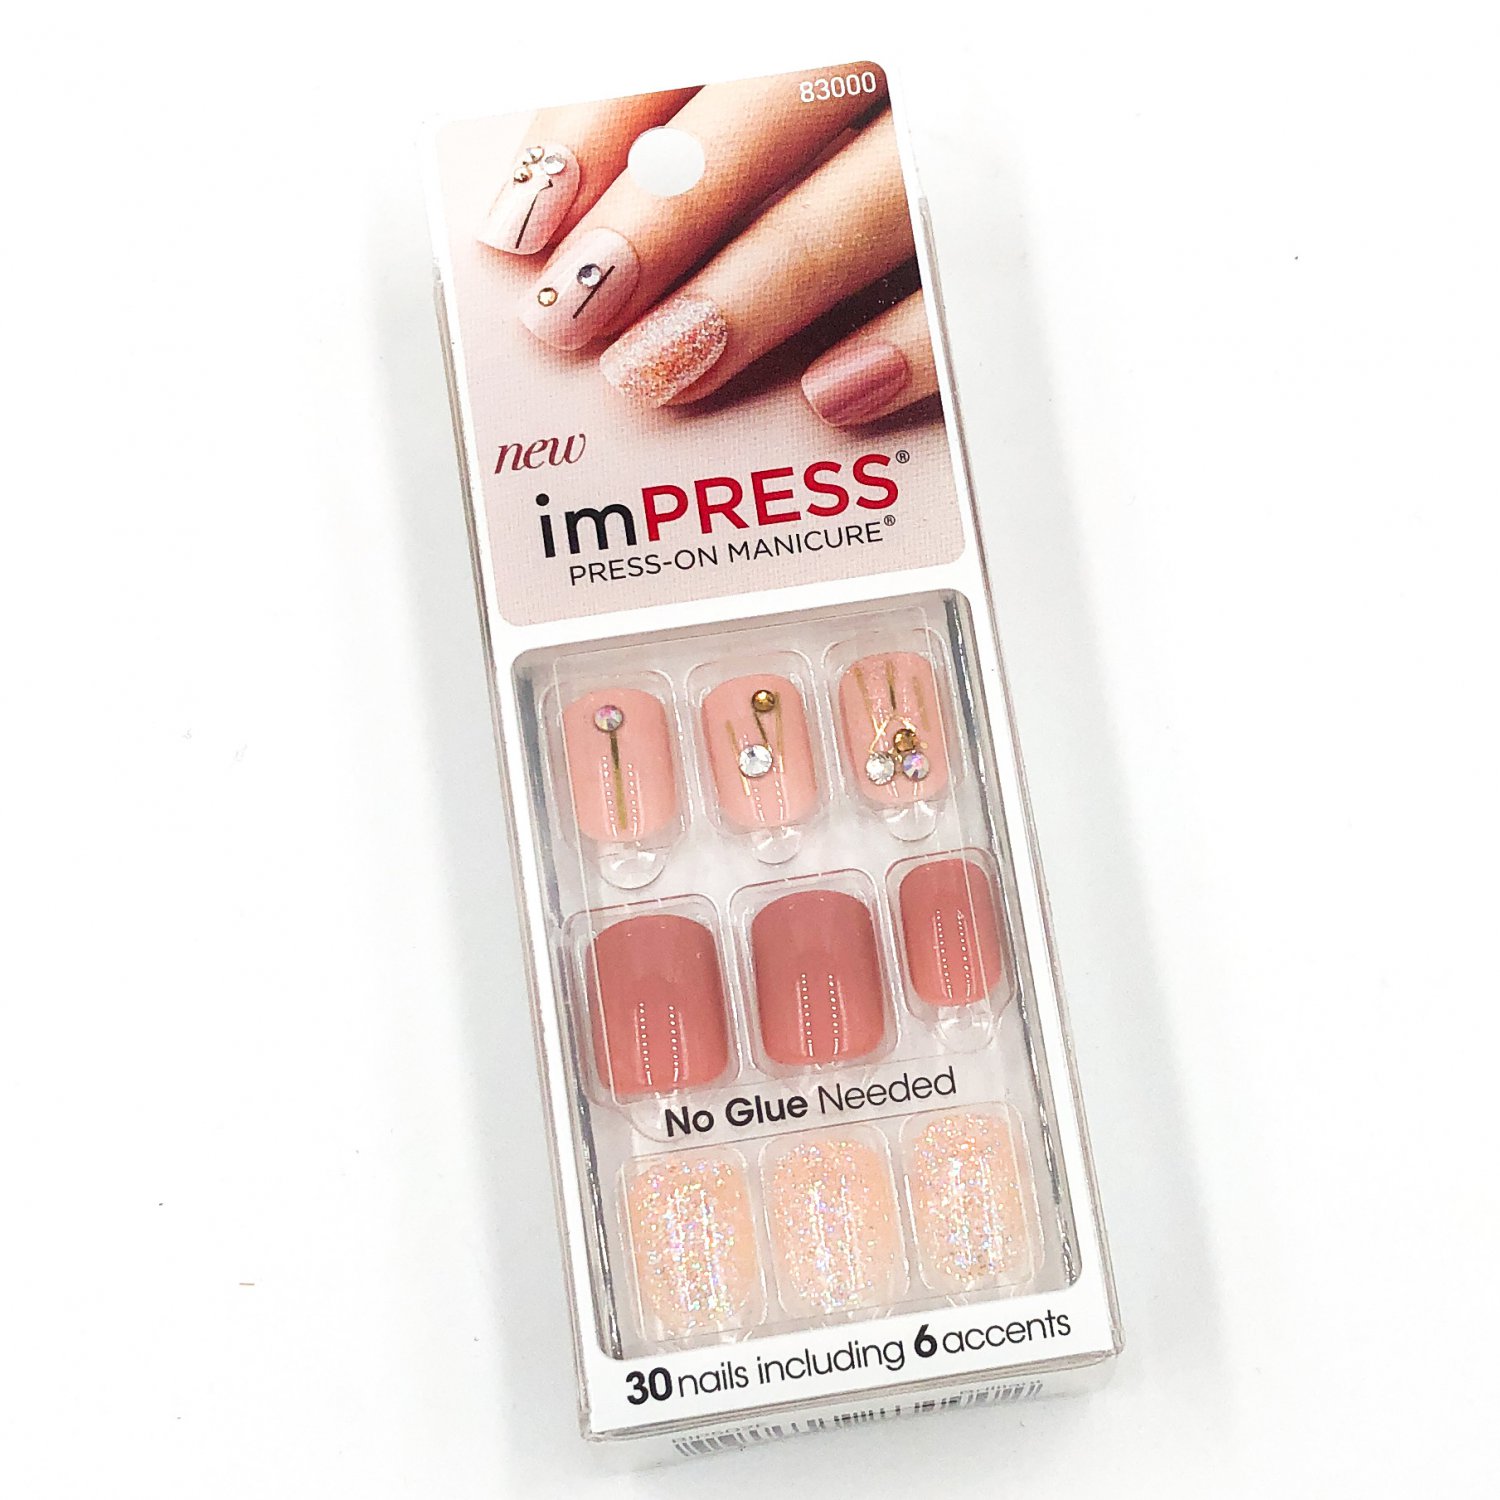 Kiss imPRESS Press-On Manicure 83000 Brilliant